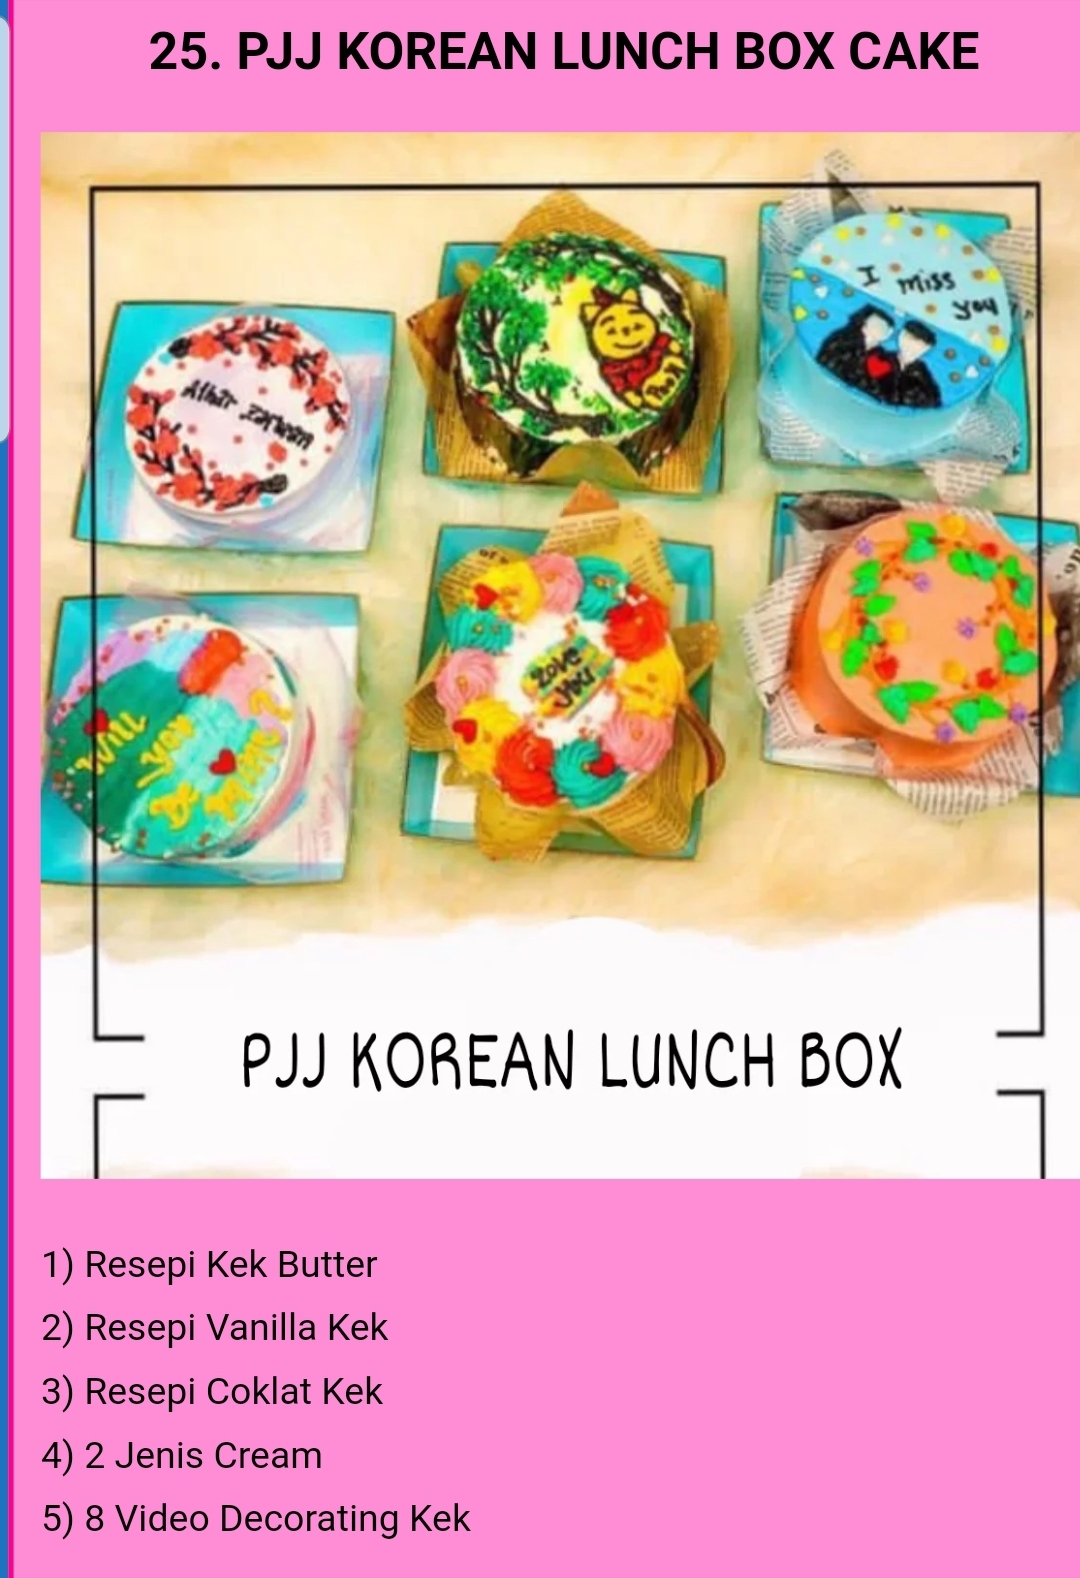 25. PJJ KOREAN LUNCH BOX CAKE